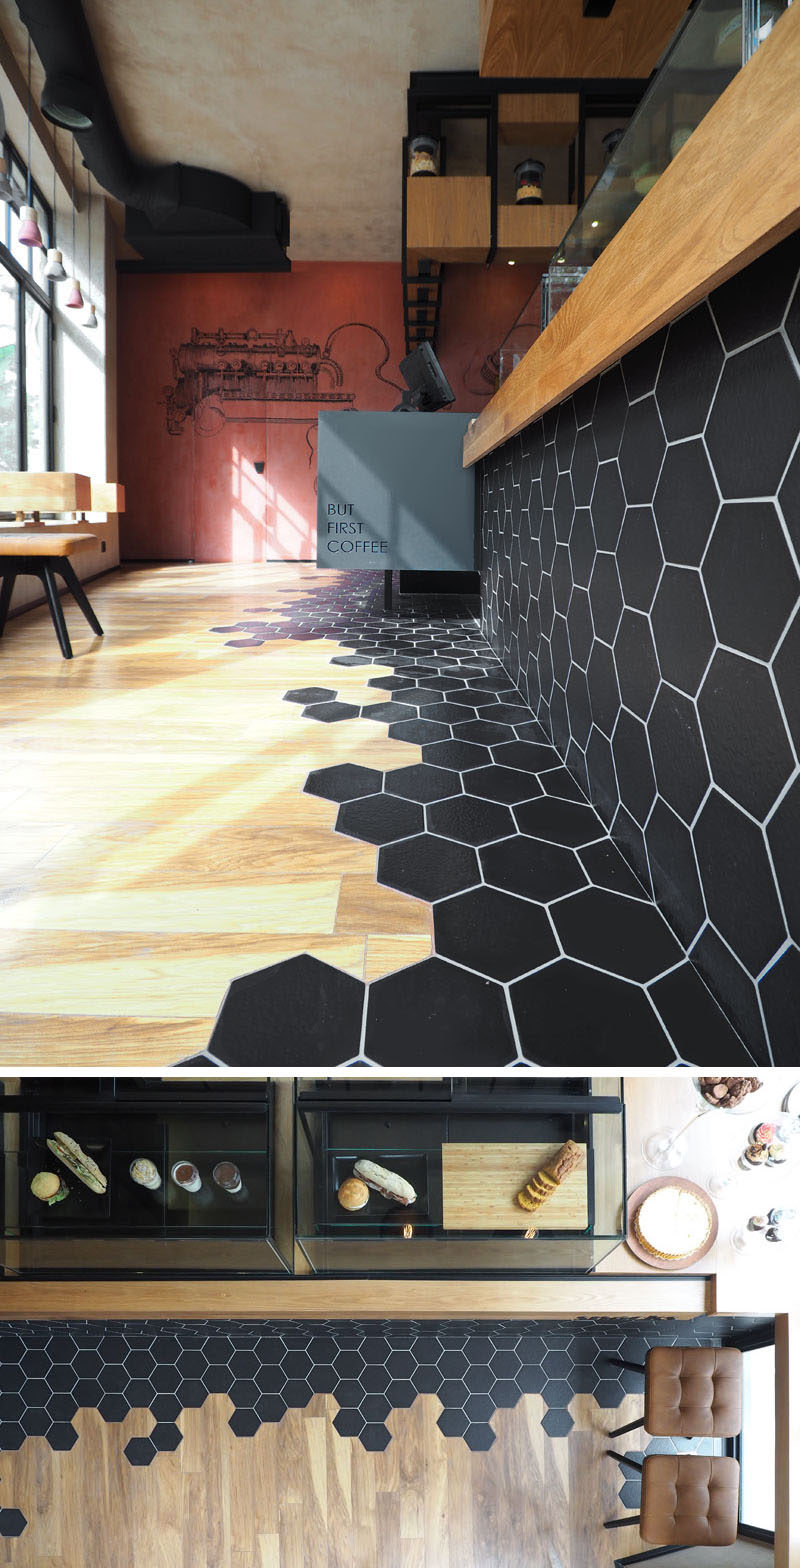 Черная шестиугольная плитка и деревянный ламинат - элемент дизайна в этом современном кафе.